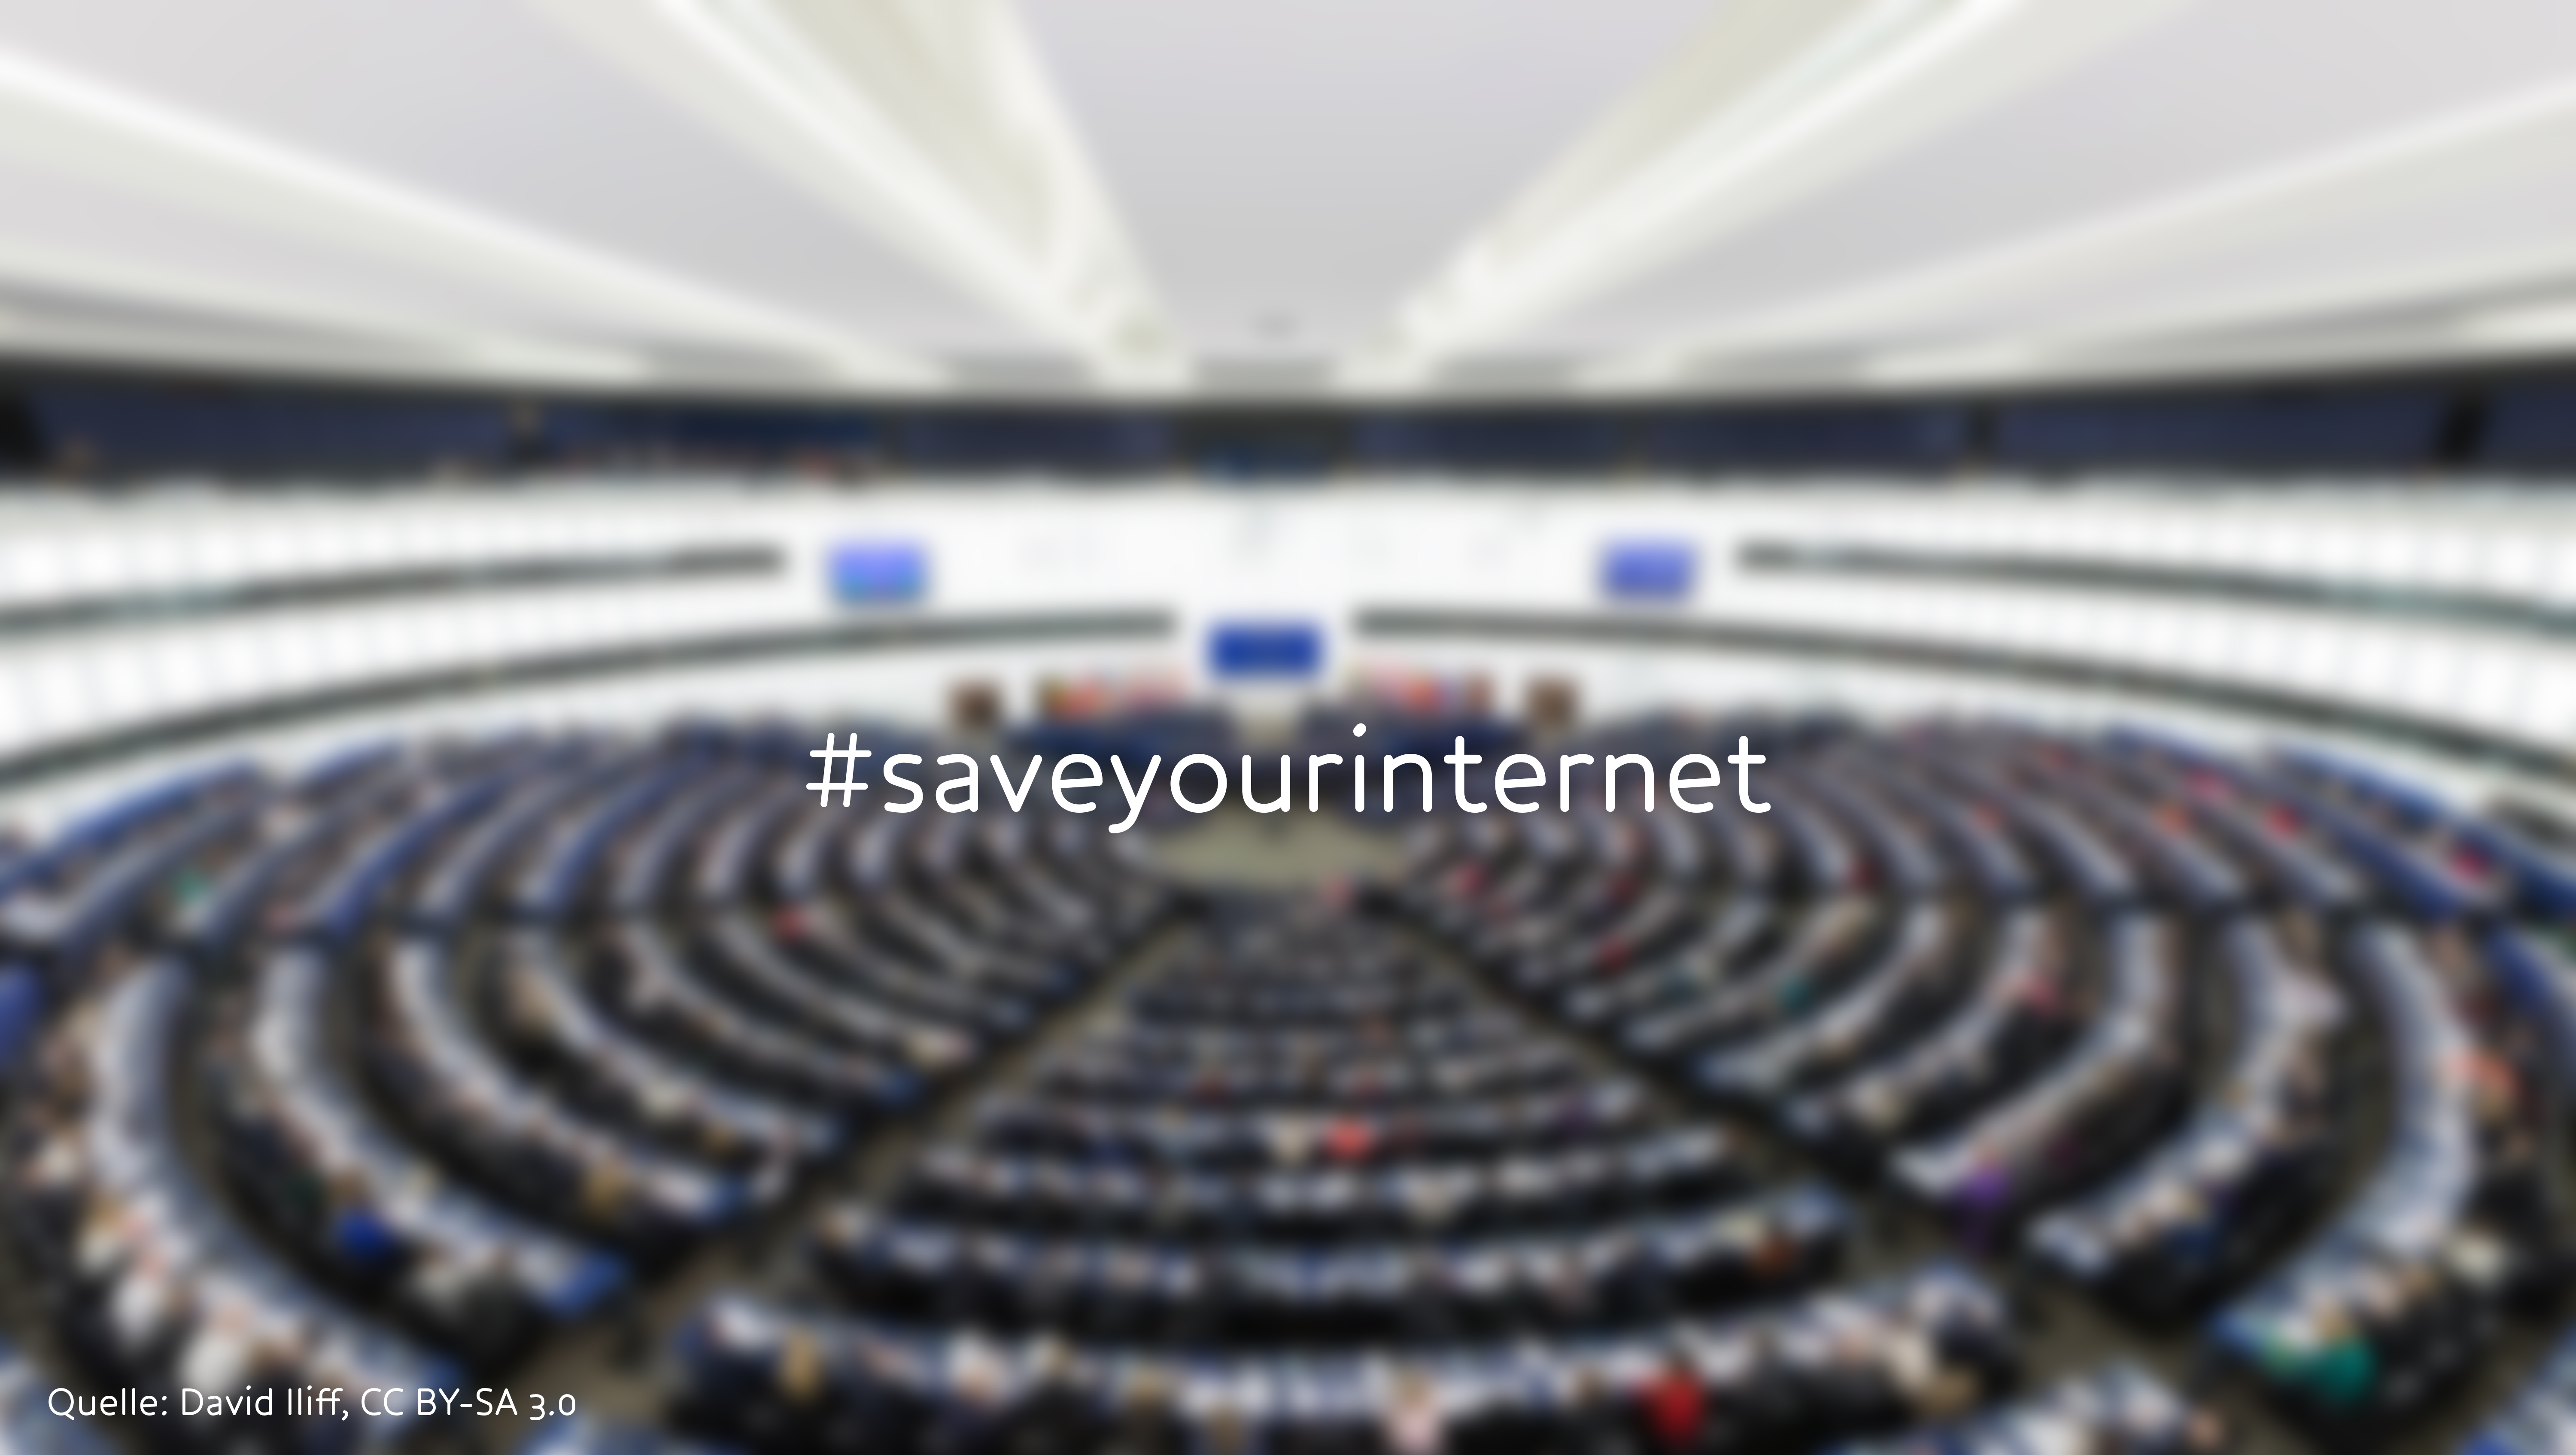 Blick in das EU-Parlament mit dem Schriftzug #saveyourinternet